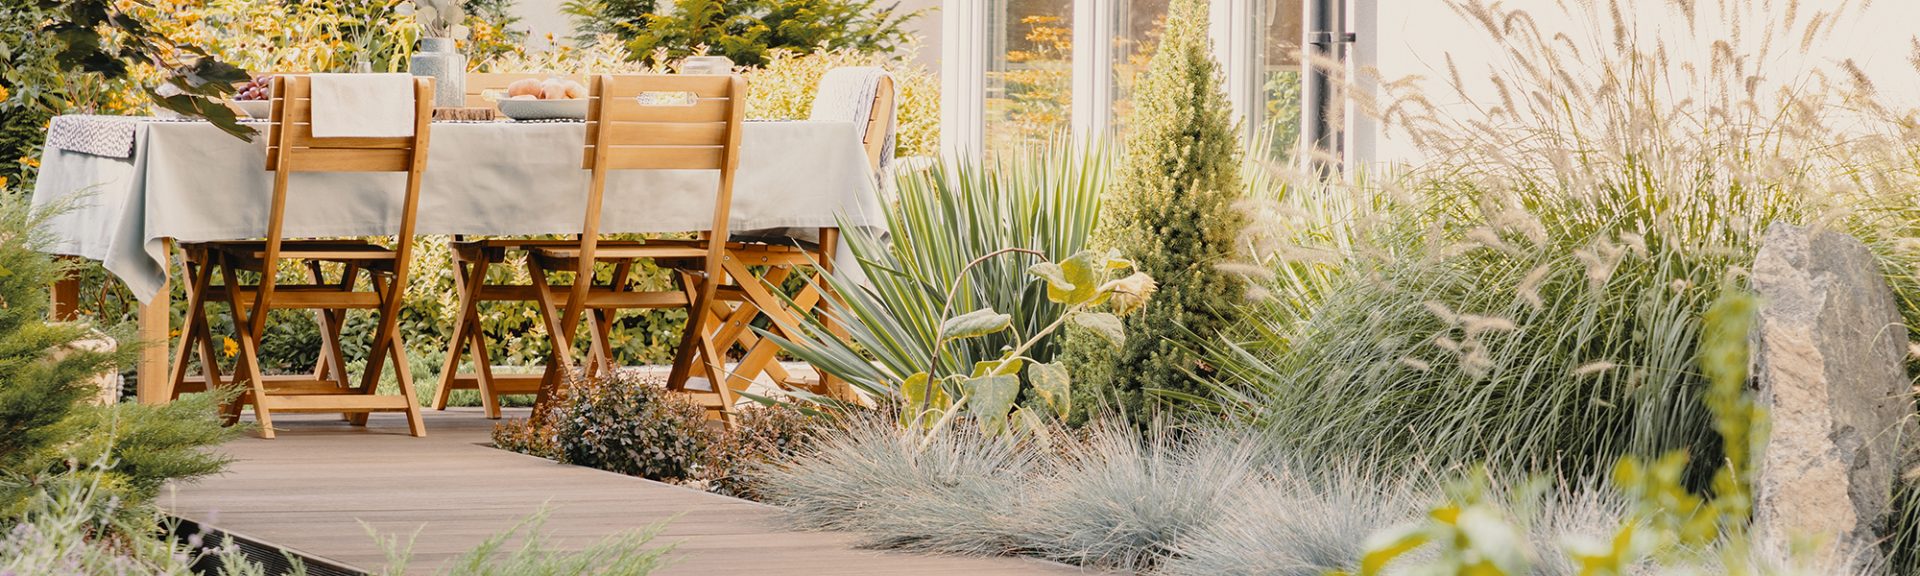 Plantes et chaises en bois à table avec de la nourriture sur la terrasse de la maison en été